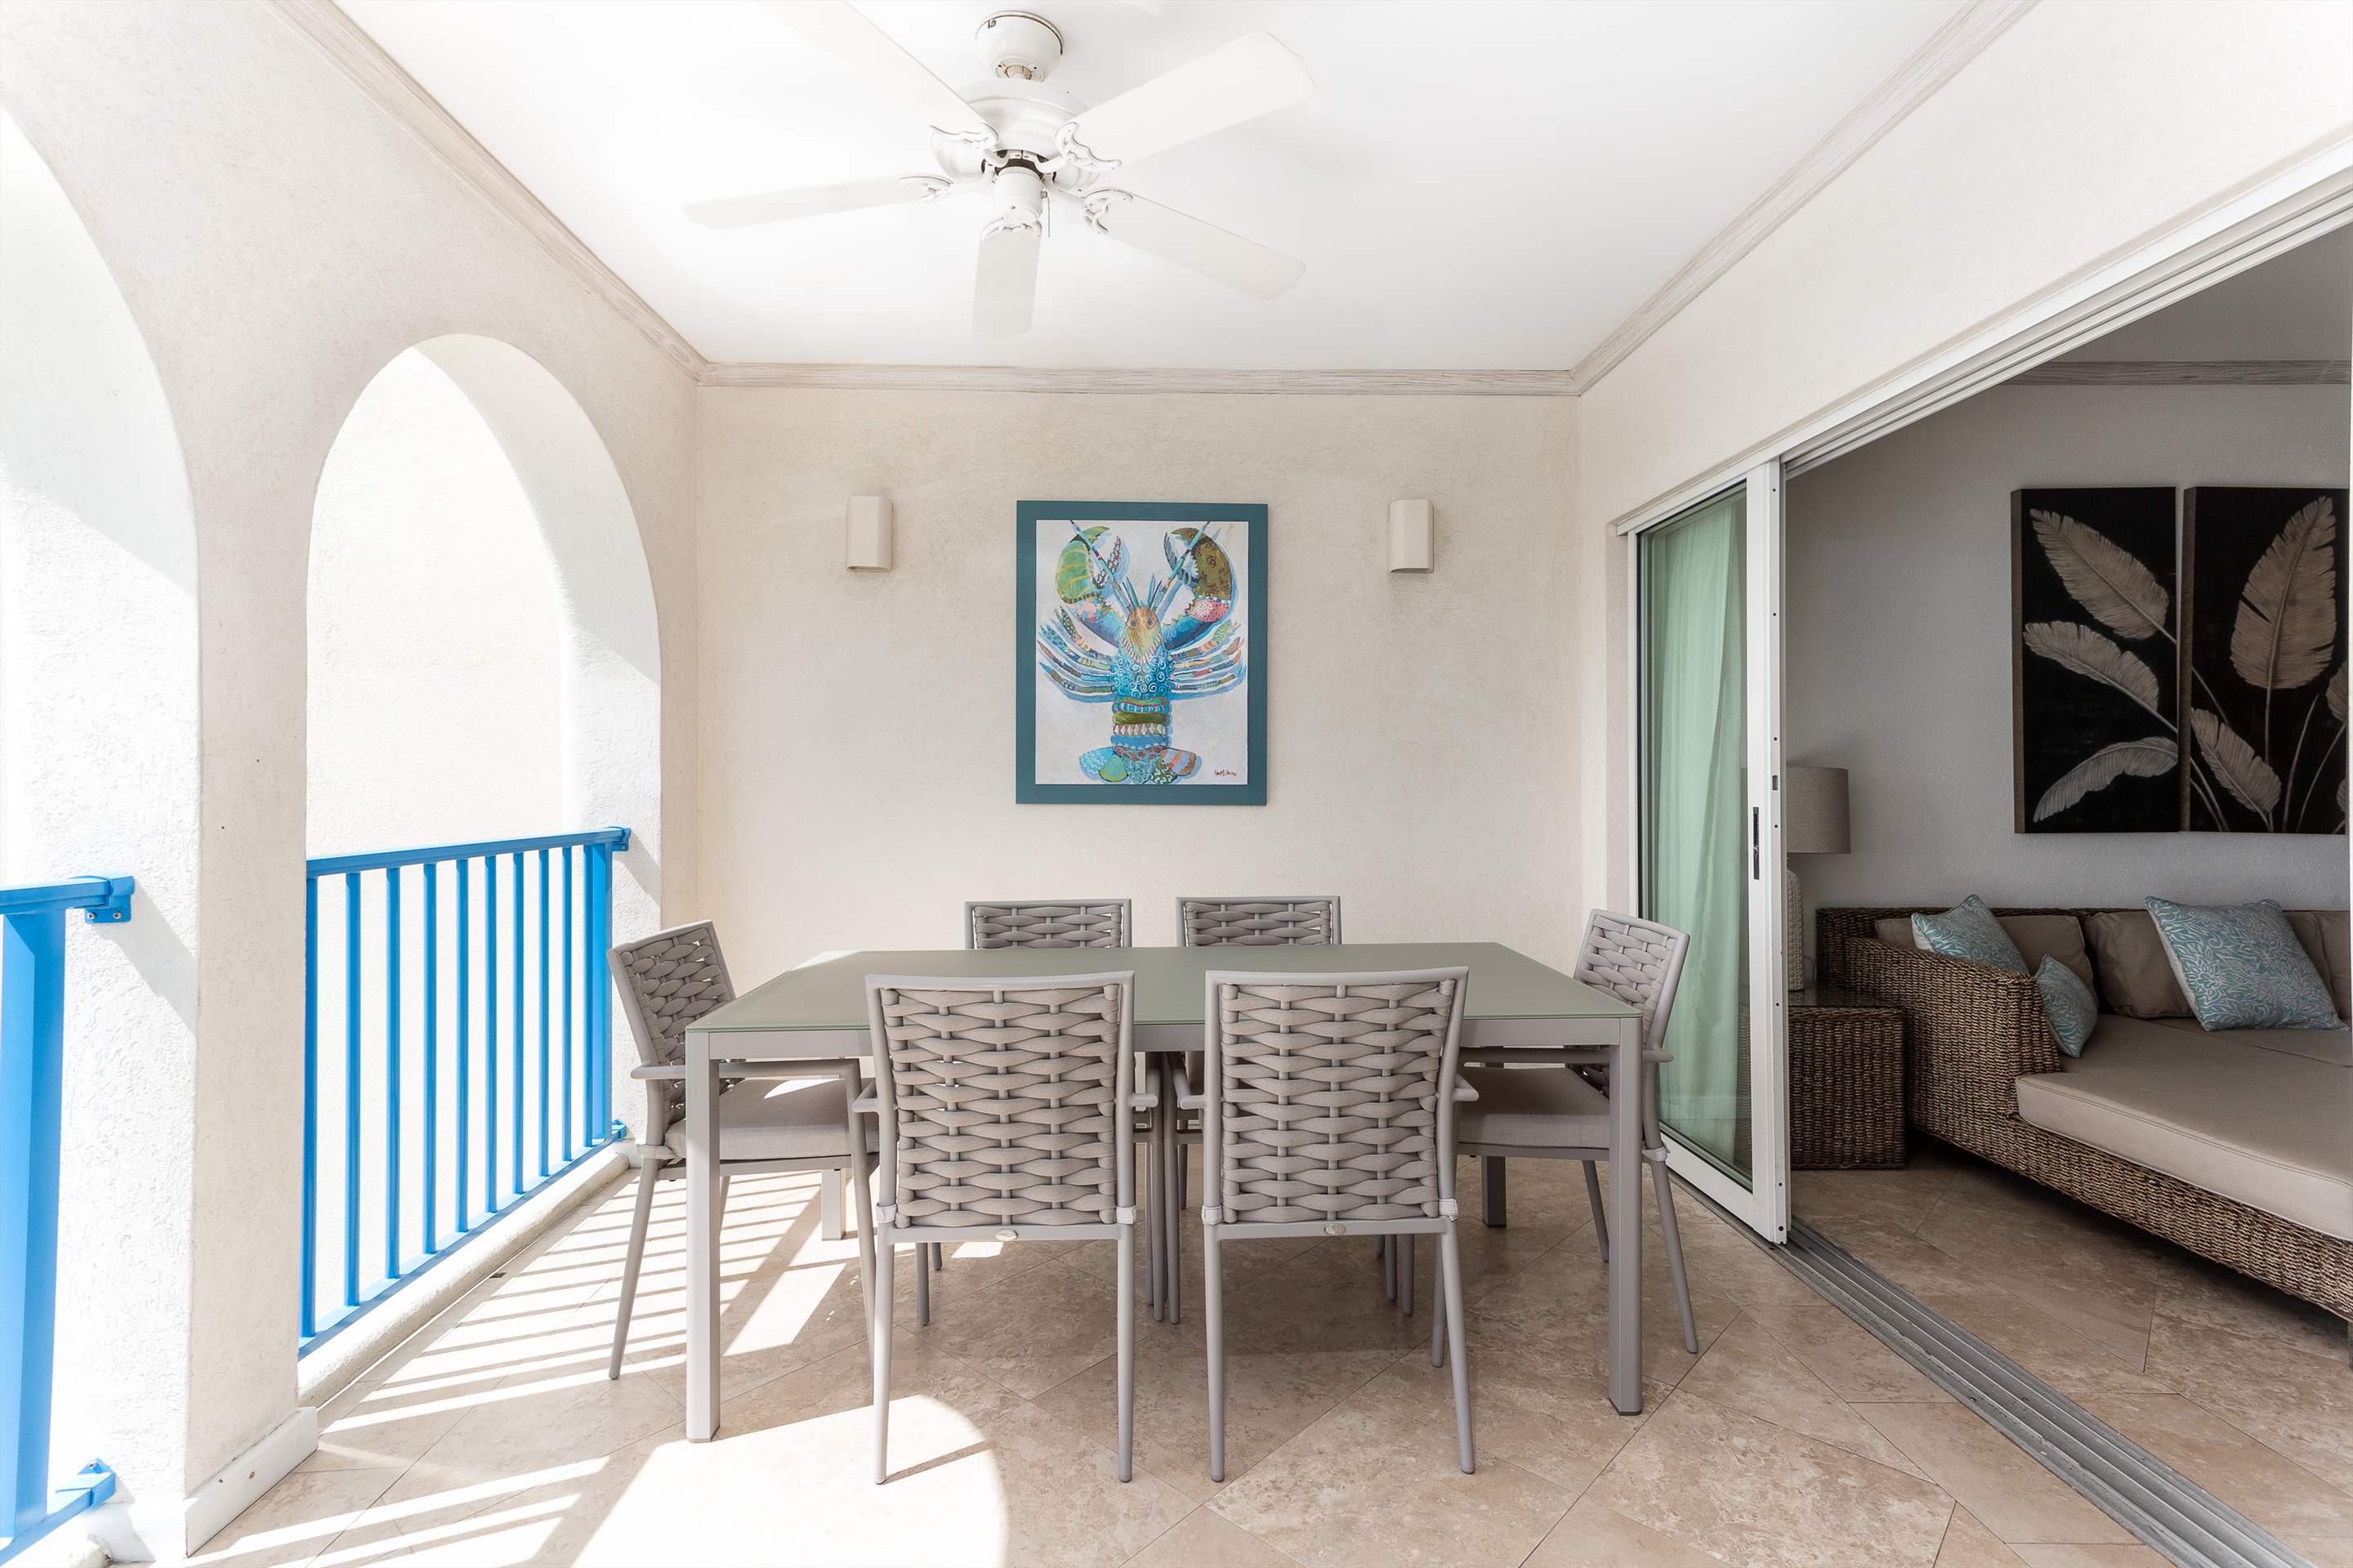 Maxwell Beach Villas 402, 2 bedroom, 2 bedroom villa in St. Lawrence Gap & South Coast, Barbados Photo #3